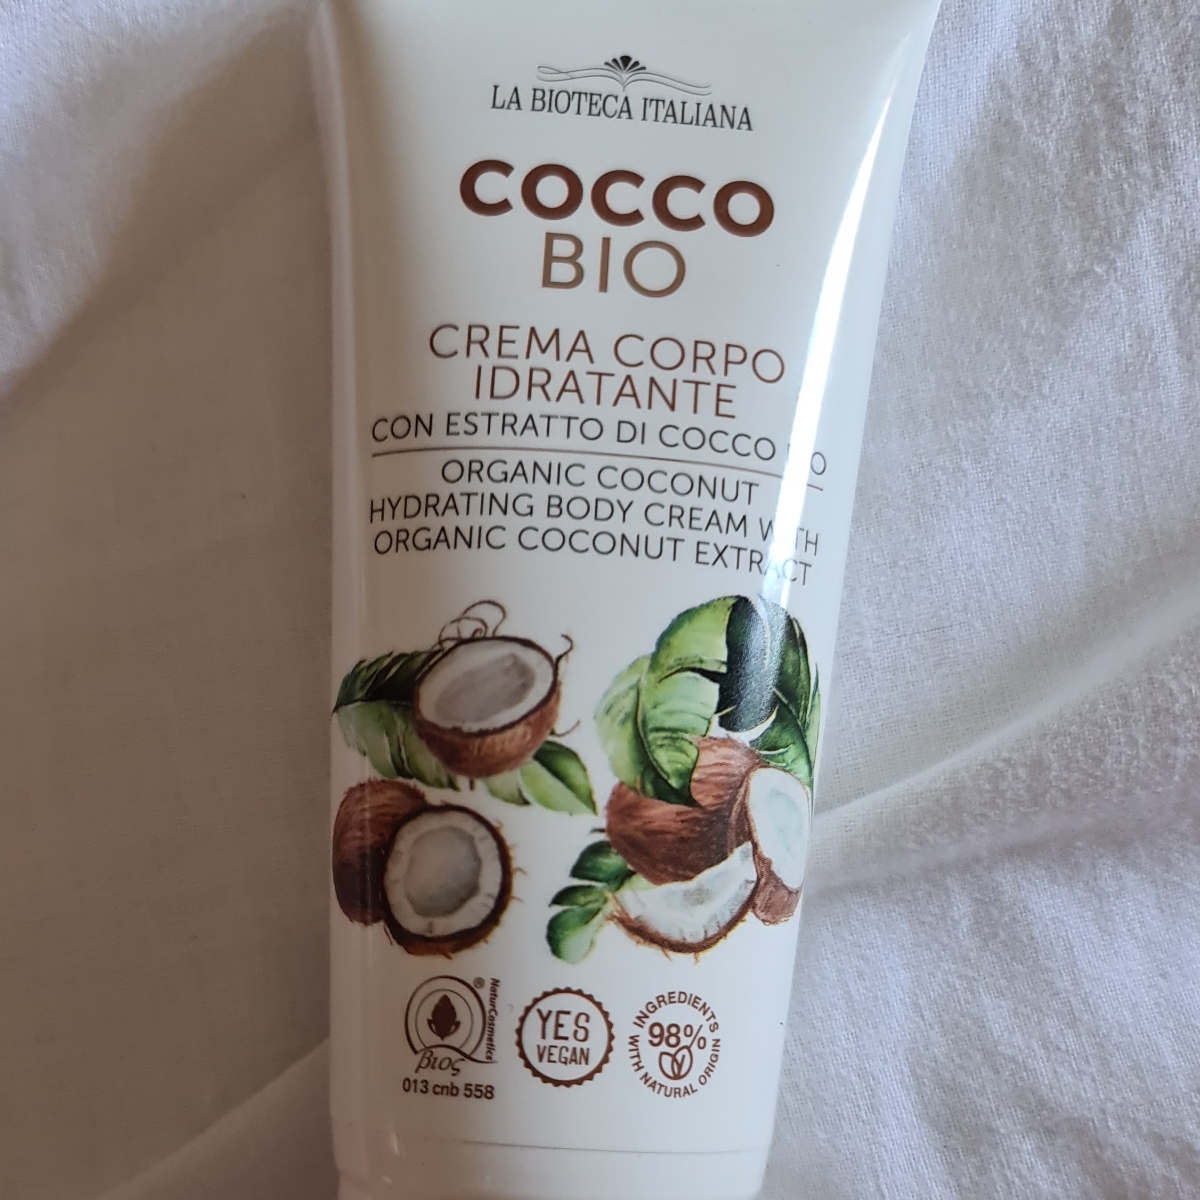 la bottega italiana Crema corpo idratante con cocco bio Review | abillion